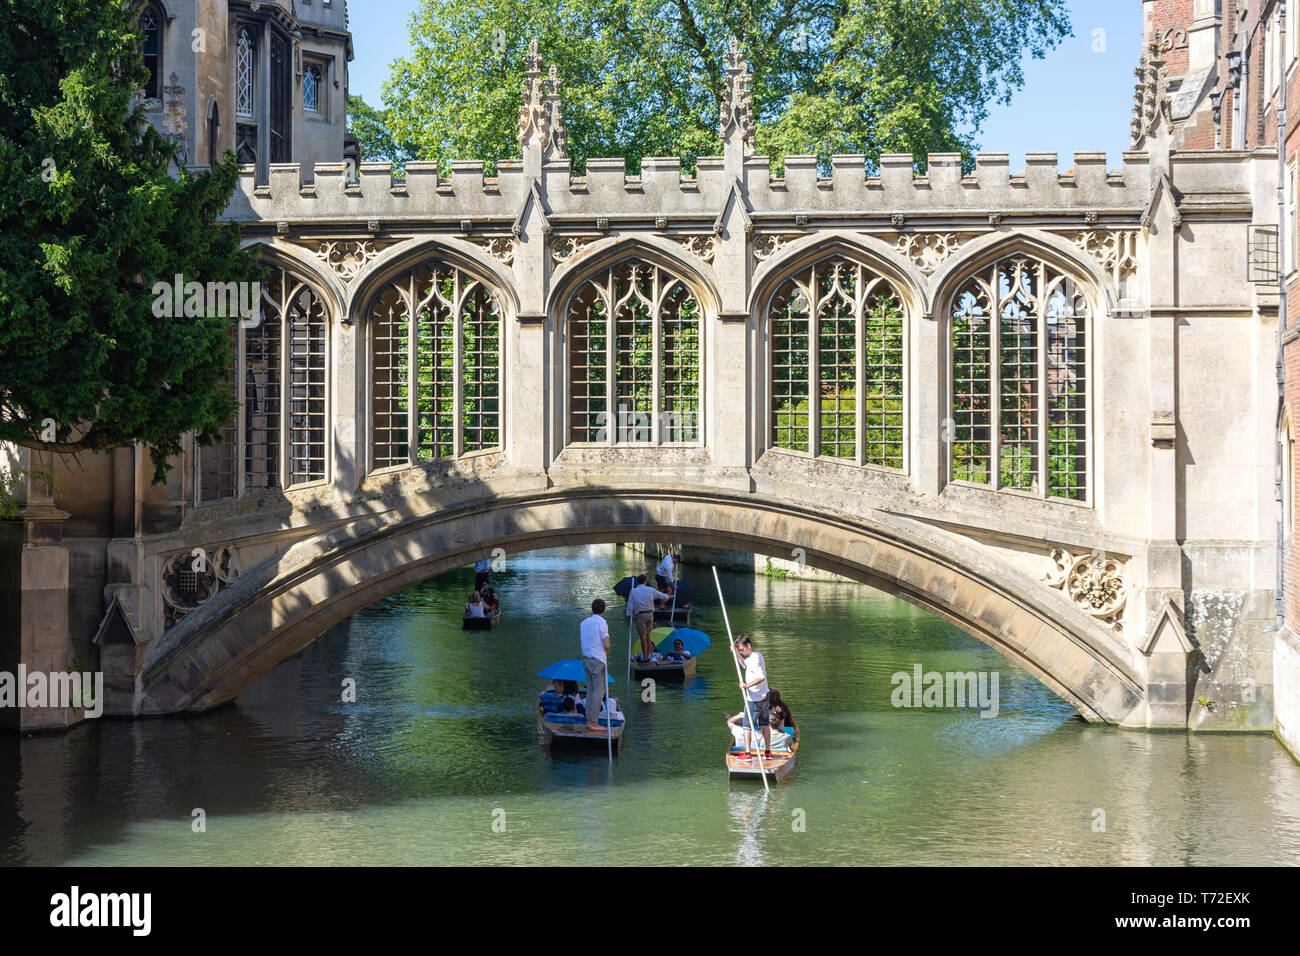 Puente de los Suspiros, St John's College, Cambridge, Cambridgeshire, Inglaterra, Reino Unido Foto de stock